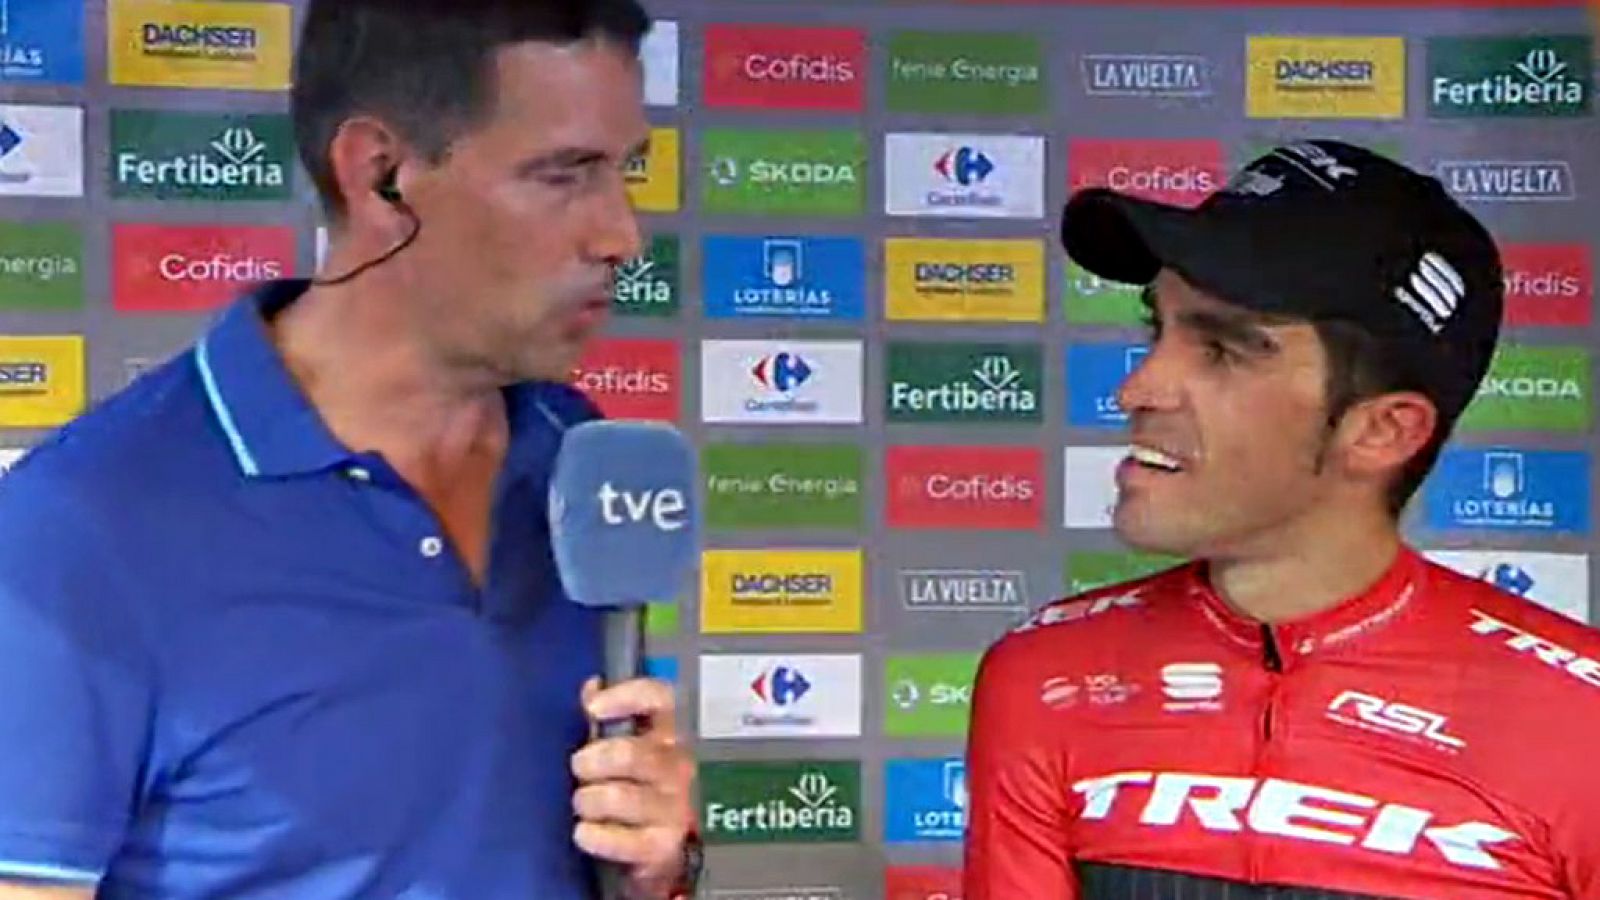 Alberto Contador (Trek), "contento" con la "buena contrarreloj" que ha hecho hoy camino de Logroño, ha avanzado que cree que aún "van a pasar cosas" en los "cinco días bonitos" que quedan de la Vuelta a España 2017.